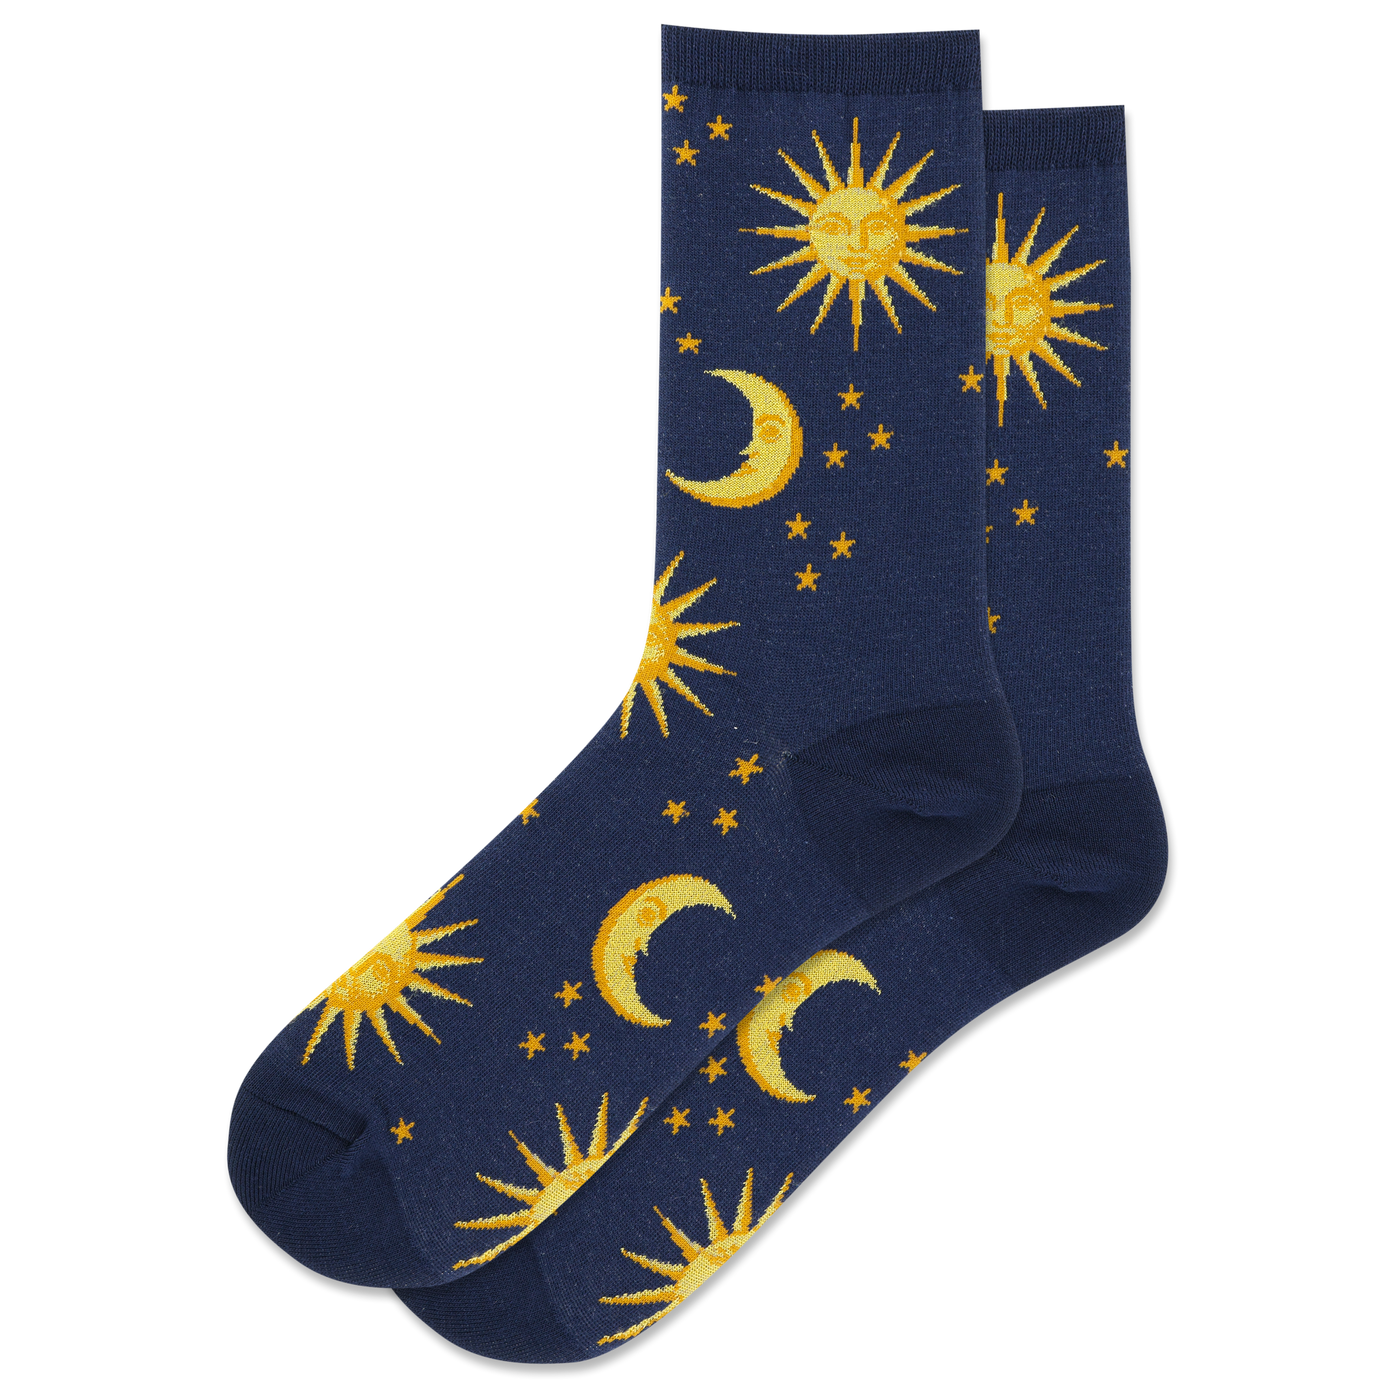 "SHINY SUN AND MOON" Crew Socks by Hot Sox - Medium